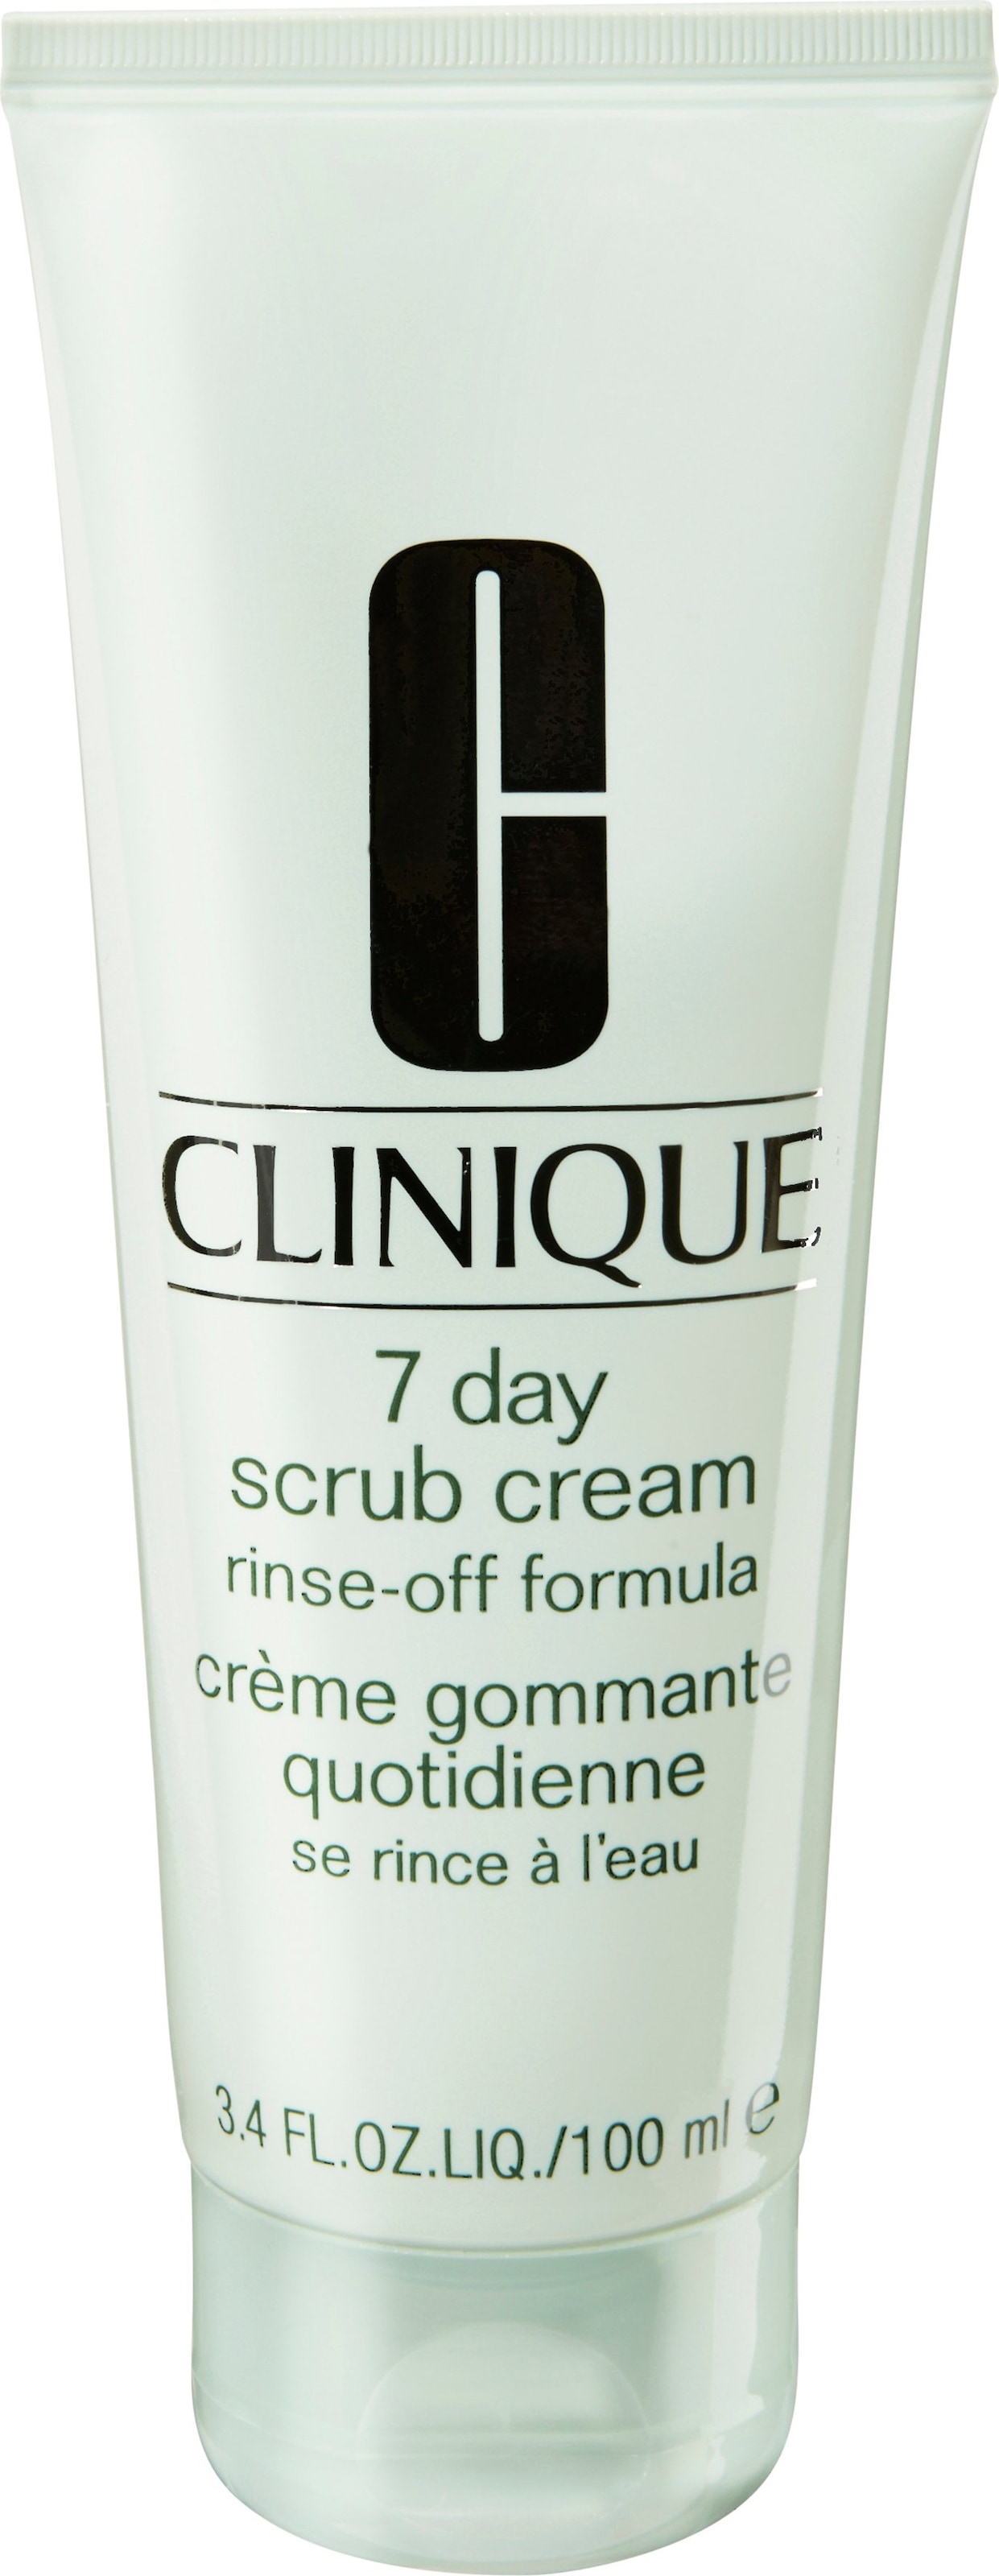 Gesichtspeeling »7 Day Scrub Cream Rinse-Off Formula«